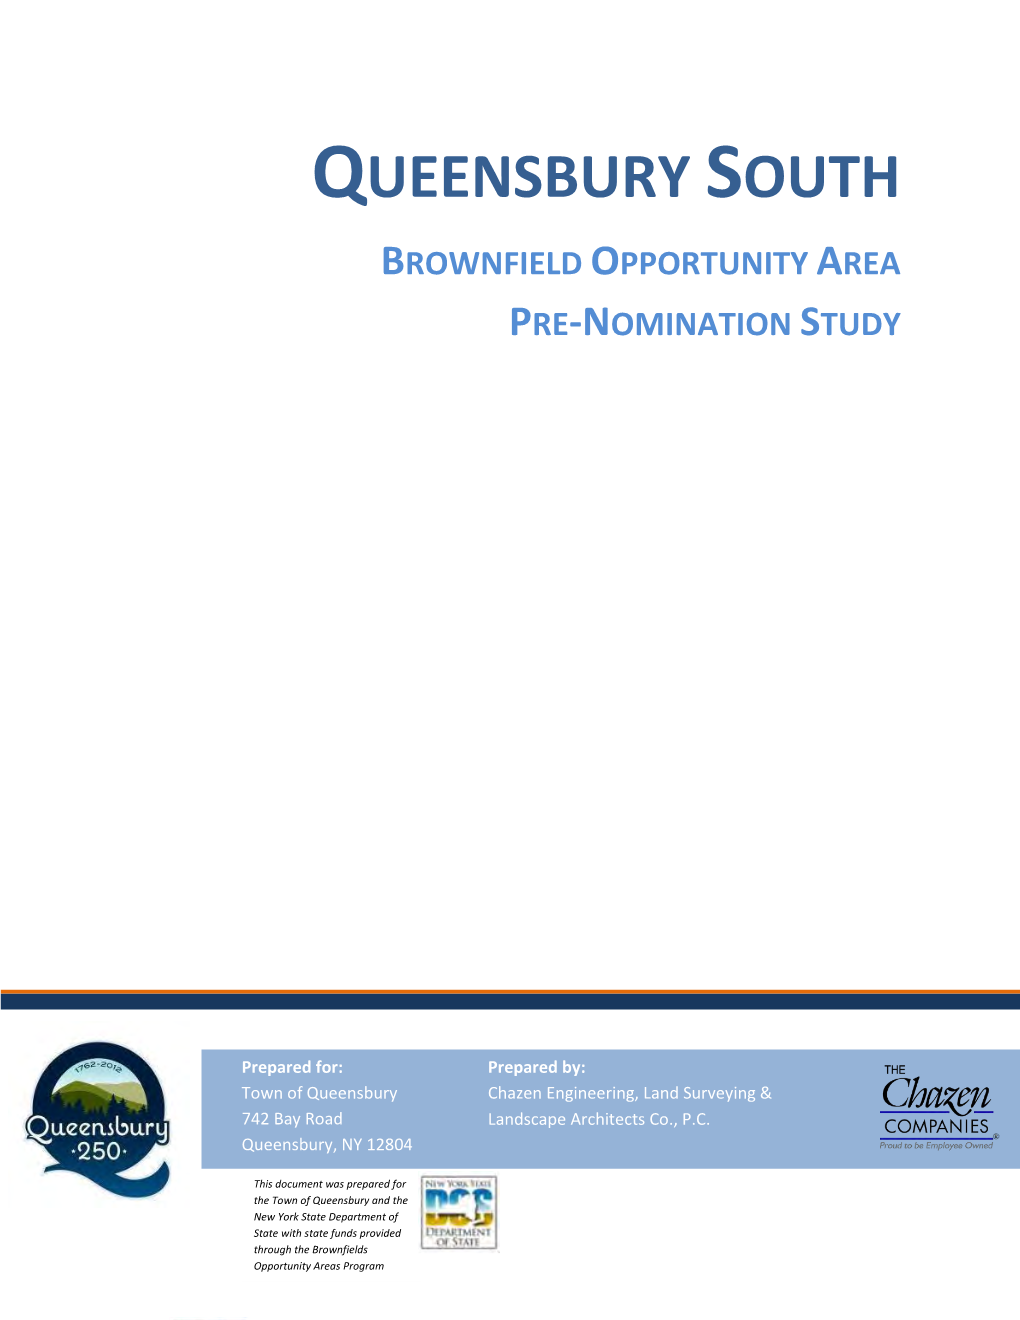 Queensbury South BOA Pre-Nomination Study Vicinity Map